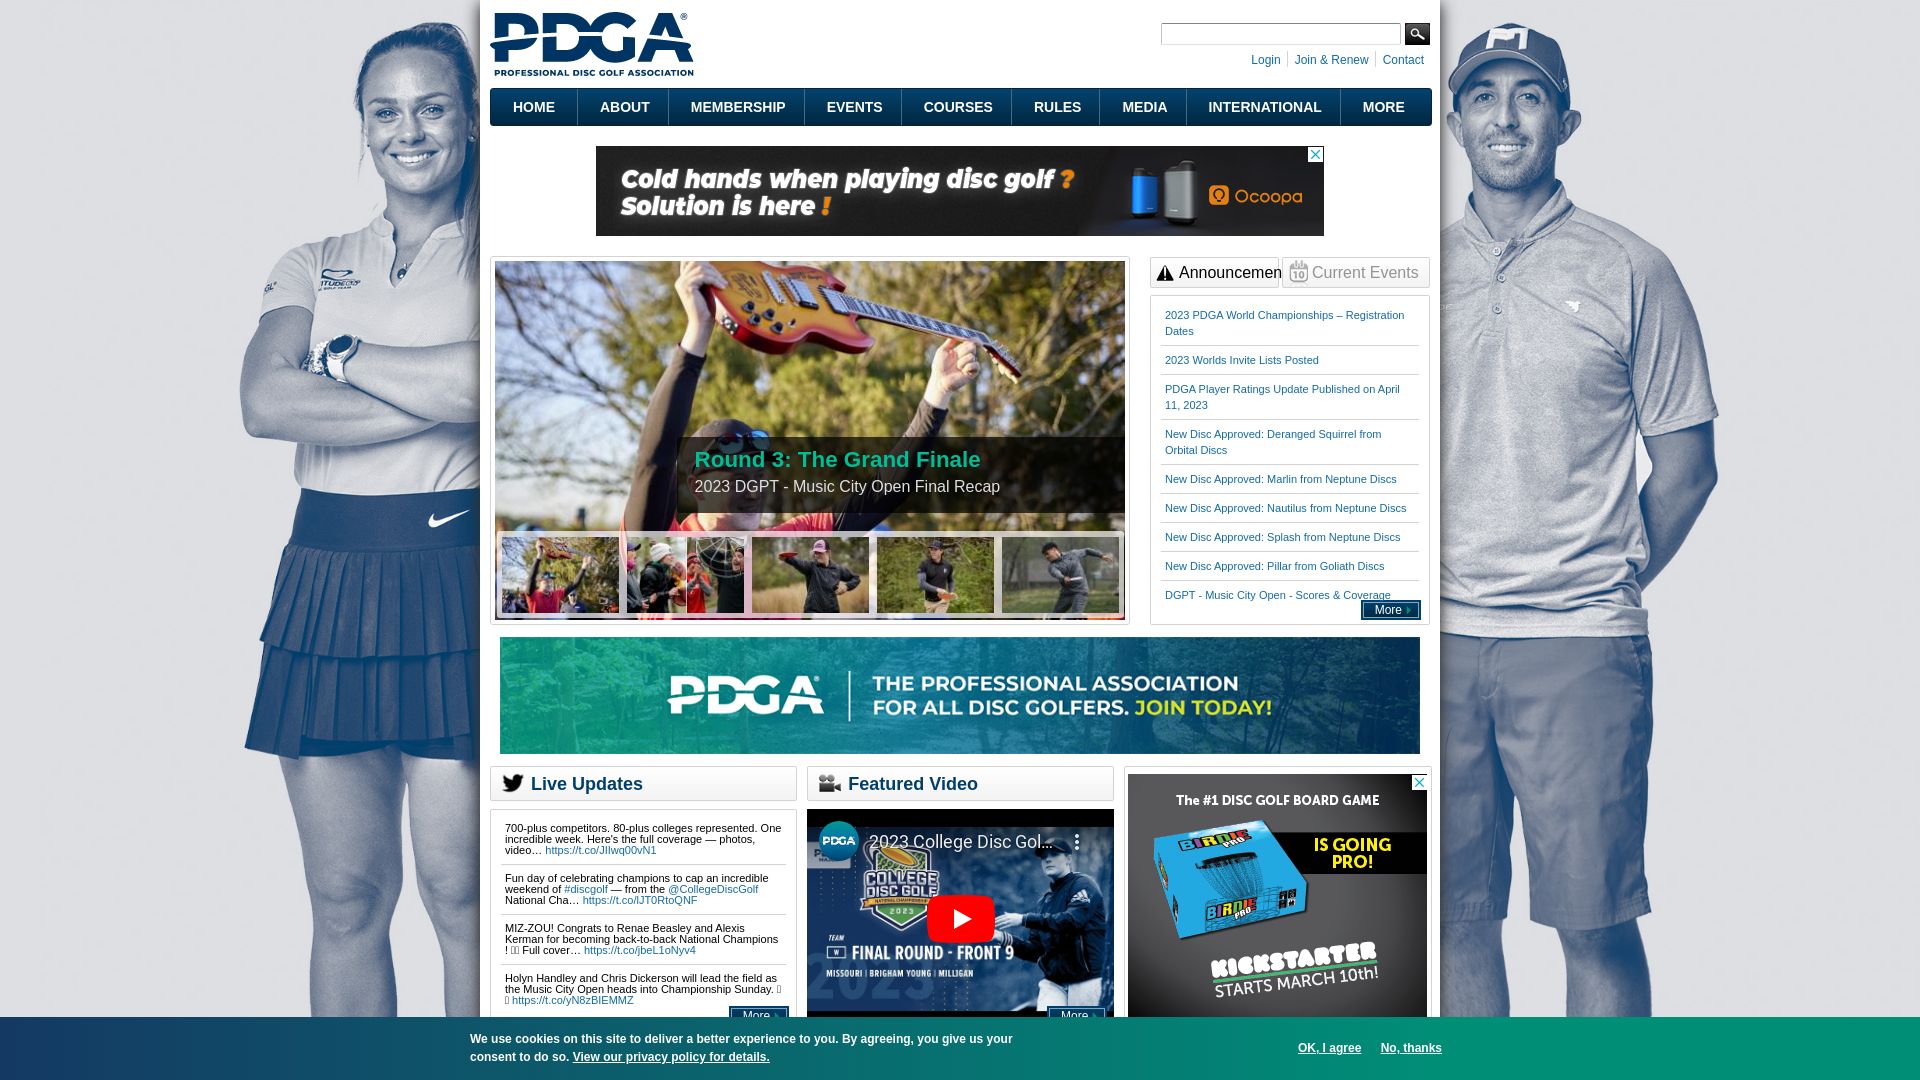 État du site web pdga.com est   EN LIGNE